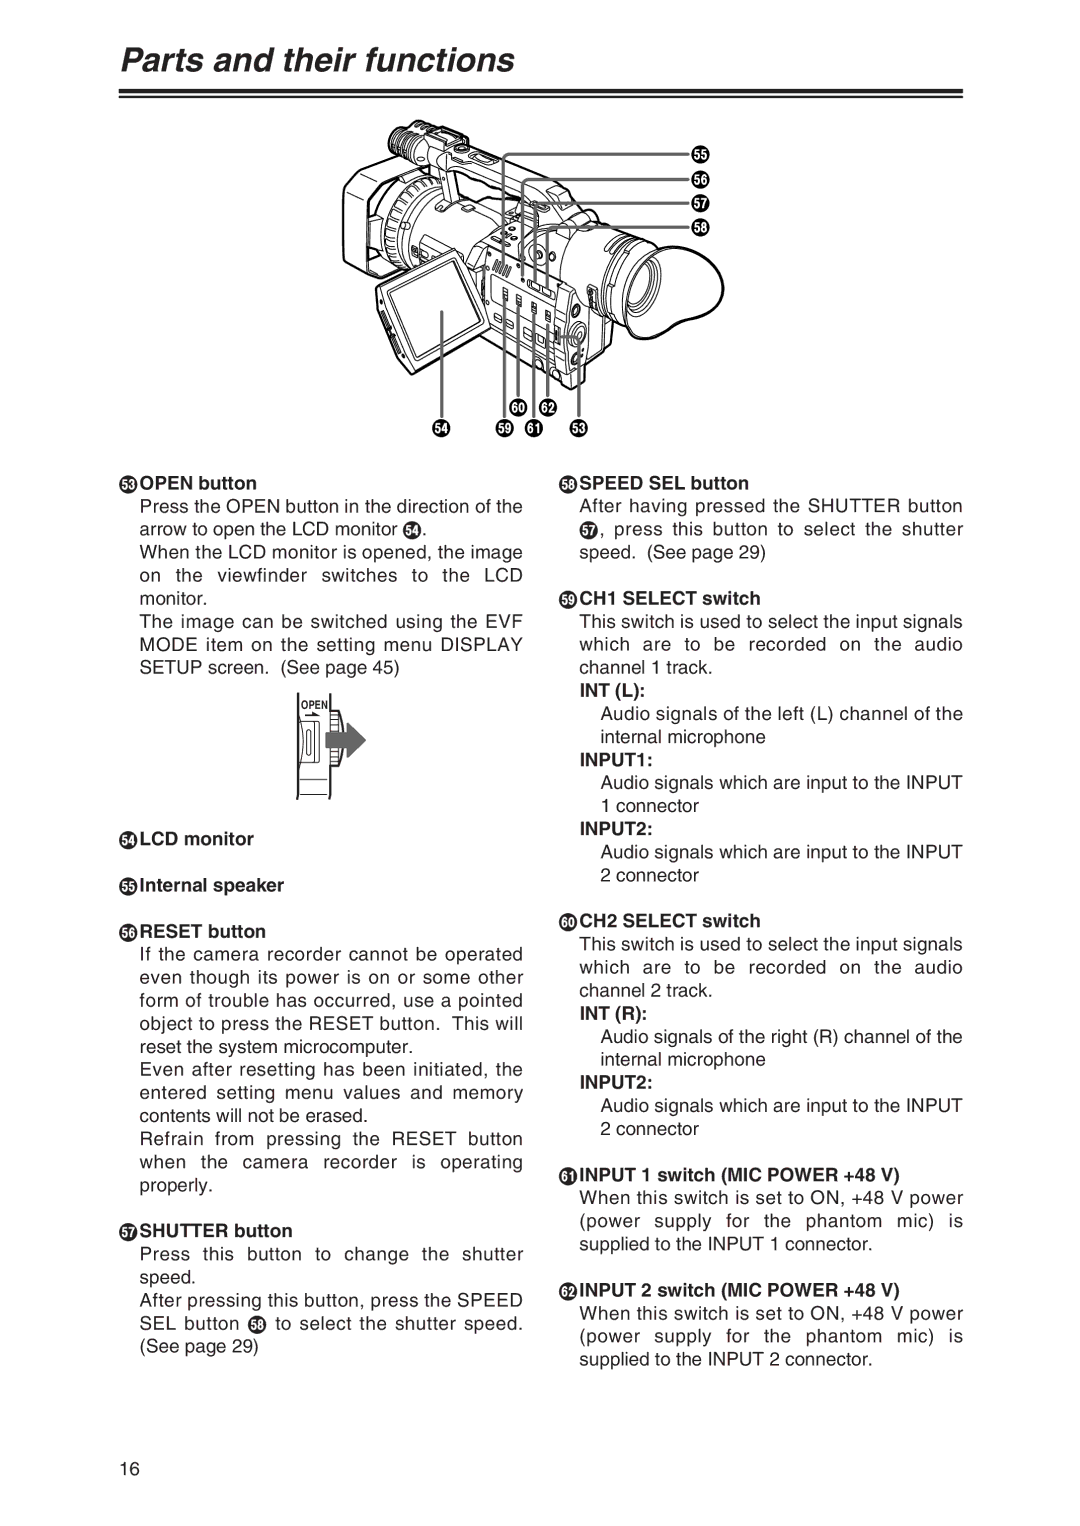 Panasonic AG-DVX100P manual INPUT1, INPUT2 